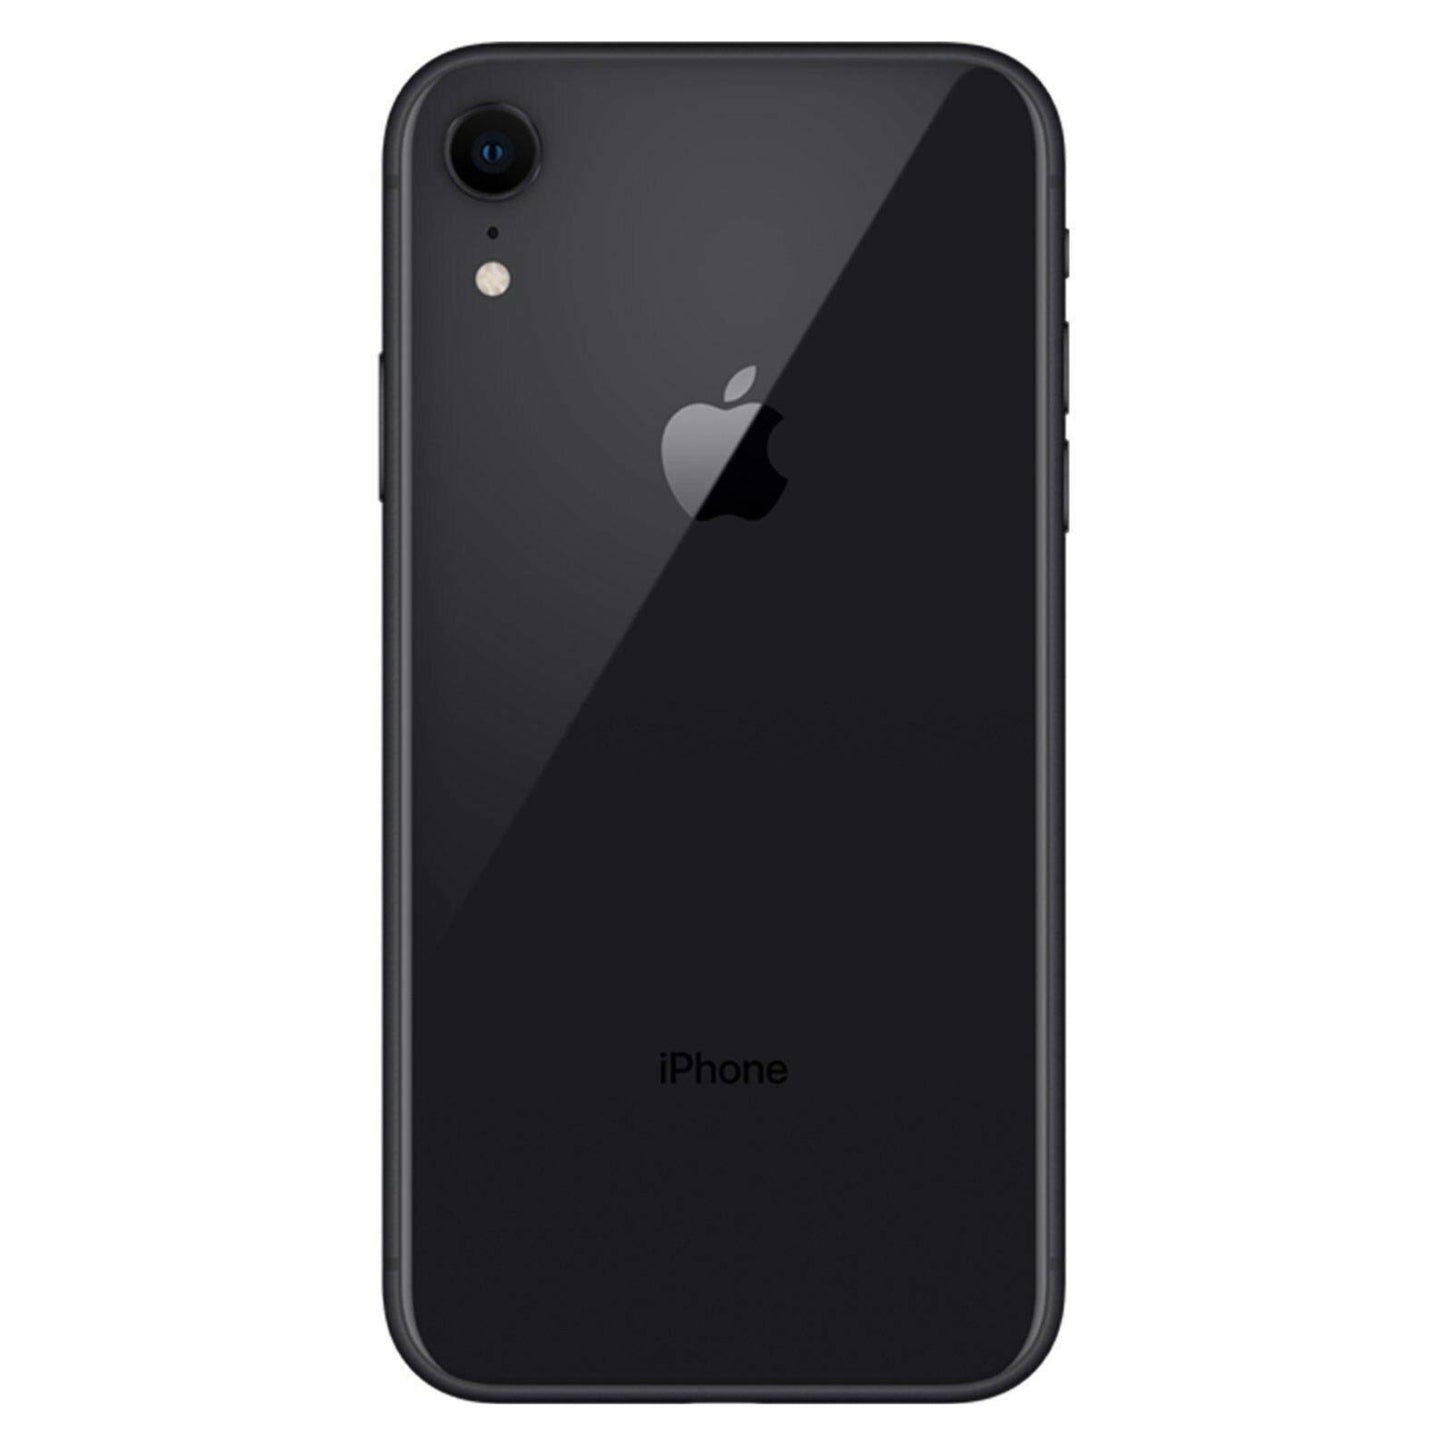 iPhone XR Black 64GB (Unlocked) Pre-Owned